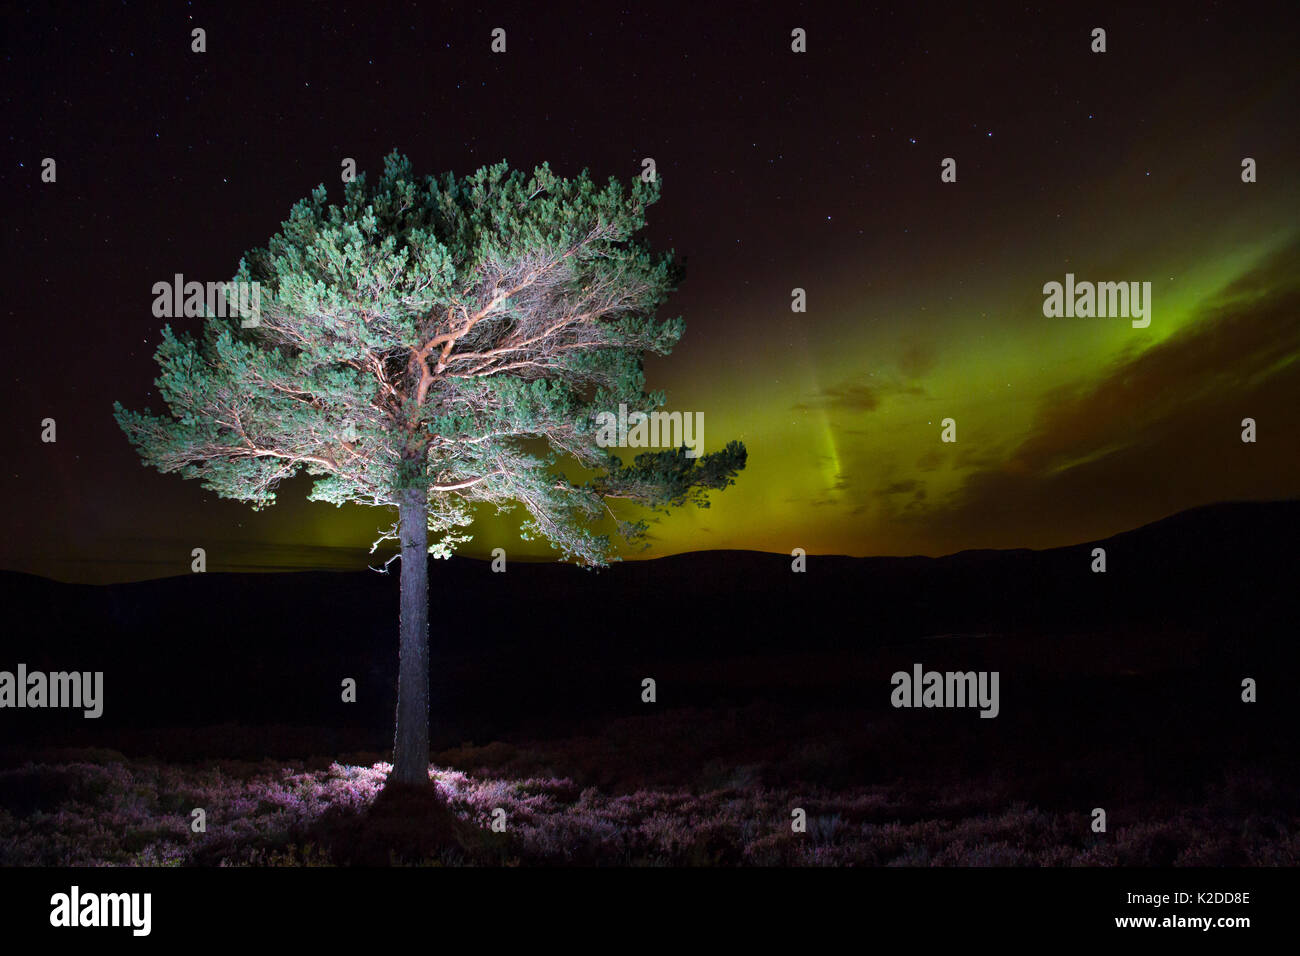 Di pino silvestre (Pinus sylvestris) con luci del nord / Aurora boreale illumina il cielo notturno in background, Monti Monadhliath, Cairngorms National Park, Scozia, Regno Unito, ottobre 2015. Foto Stock